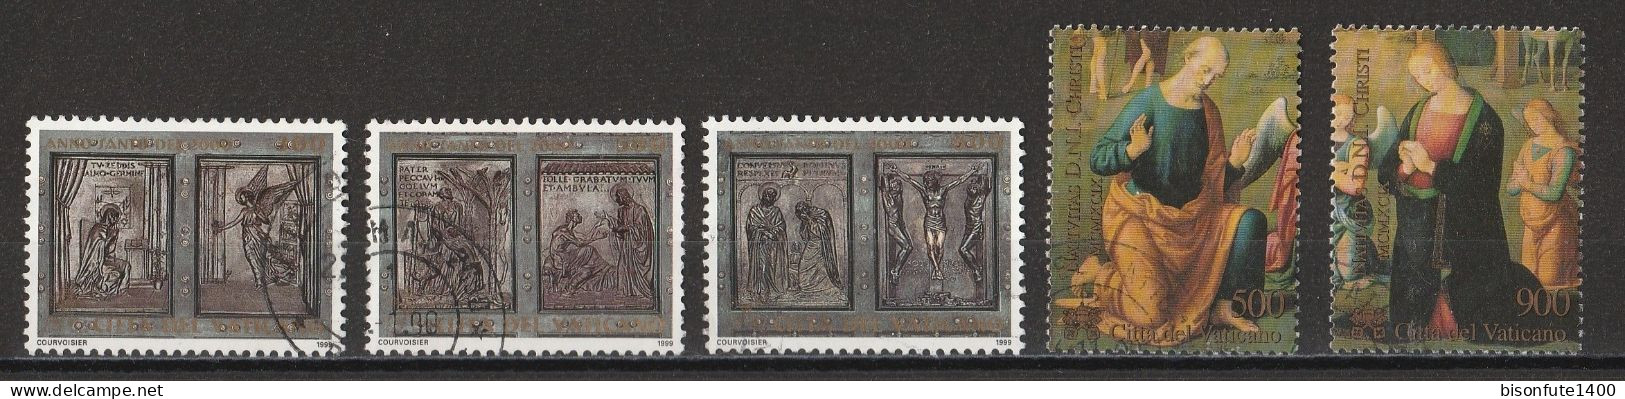 Vatican 1999 : Timbres Yvert & Tellier N° 1162 - 1164 - 1166 - 1177 - 1178 - 1179 Et 1180 Oblitérés - Oblitérés